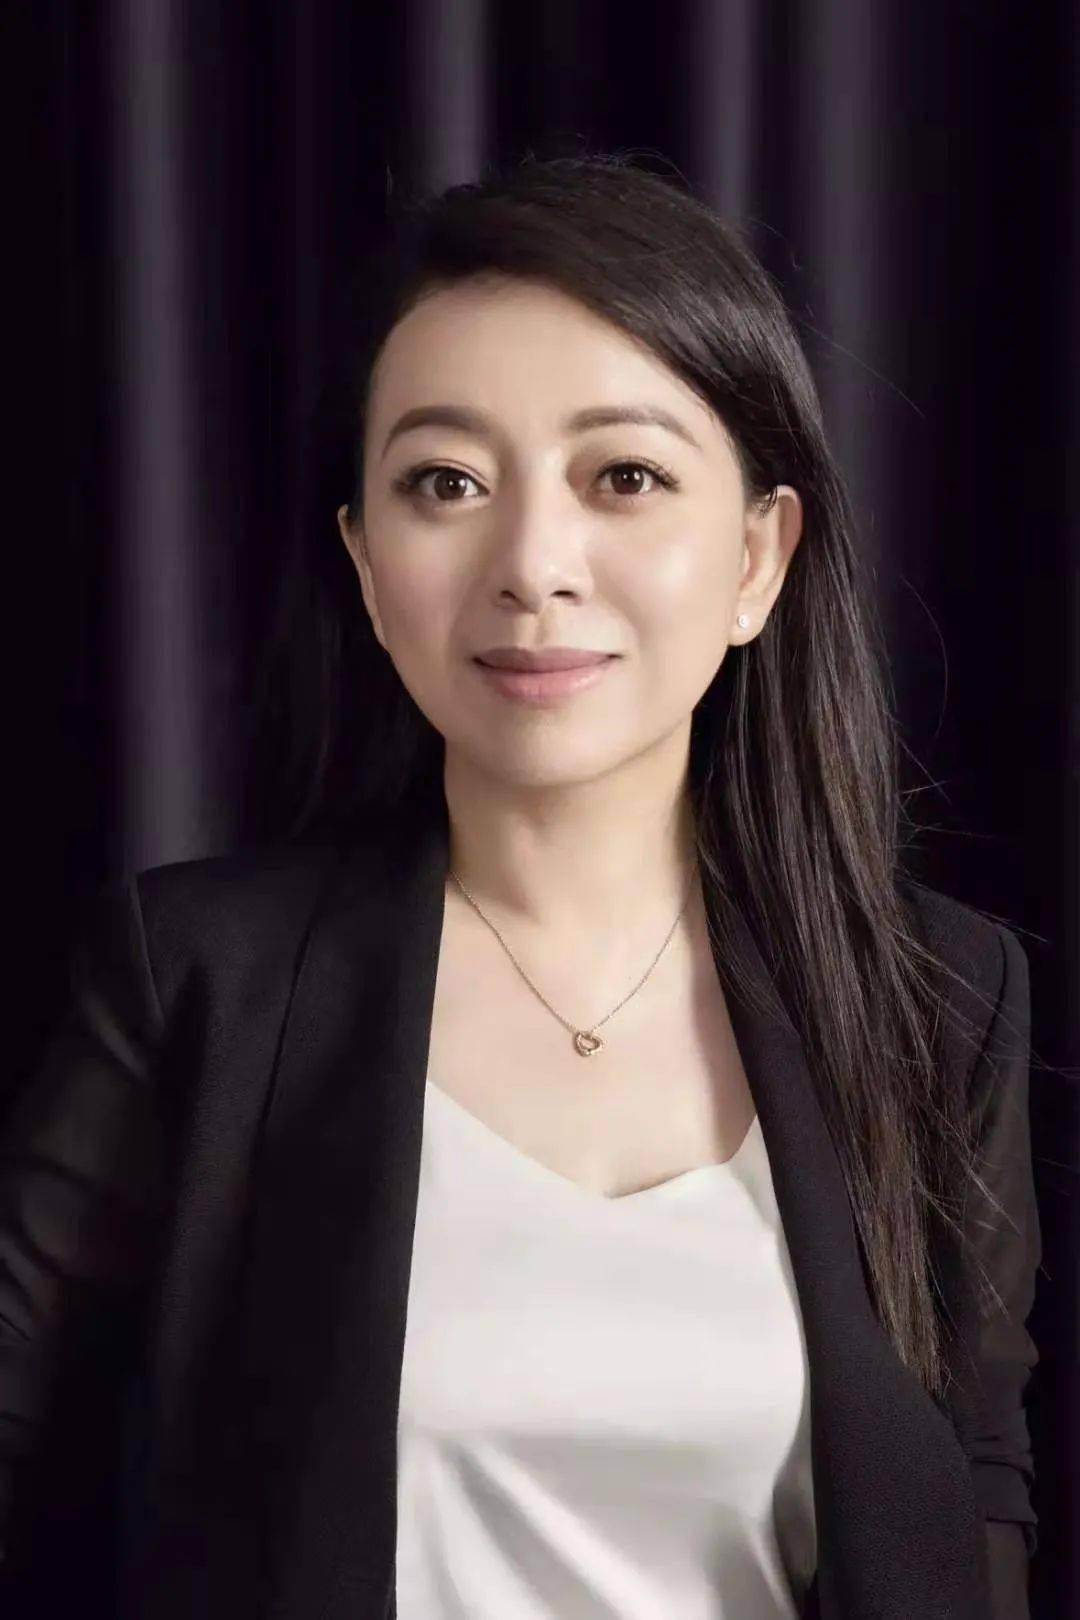 据悉,朝云集团于2018年正式成立,董事长陈丹霞为立白集团创始人之一